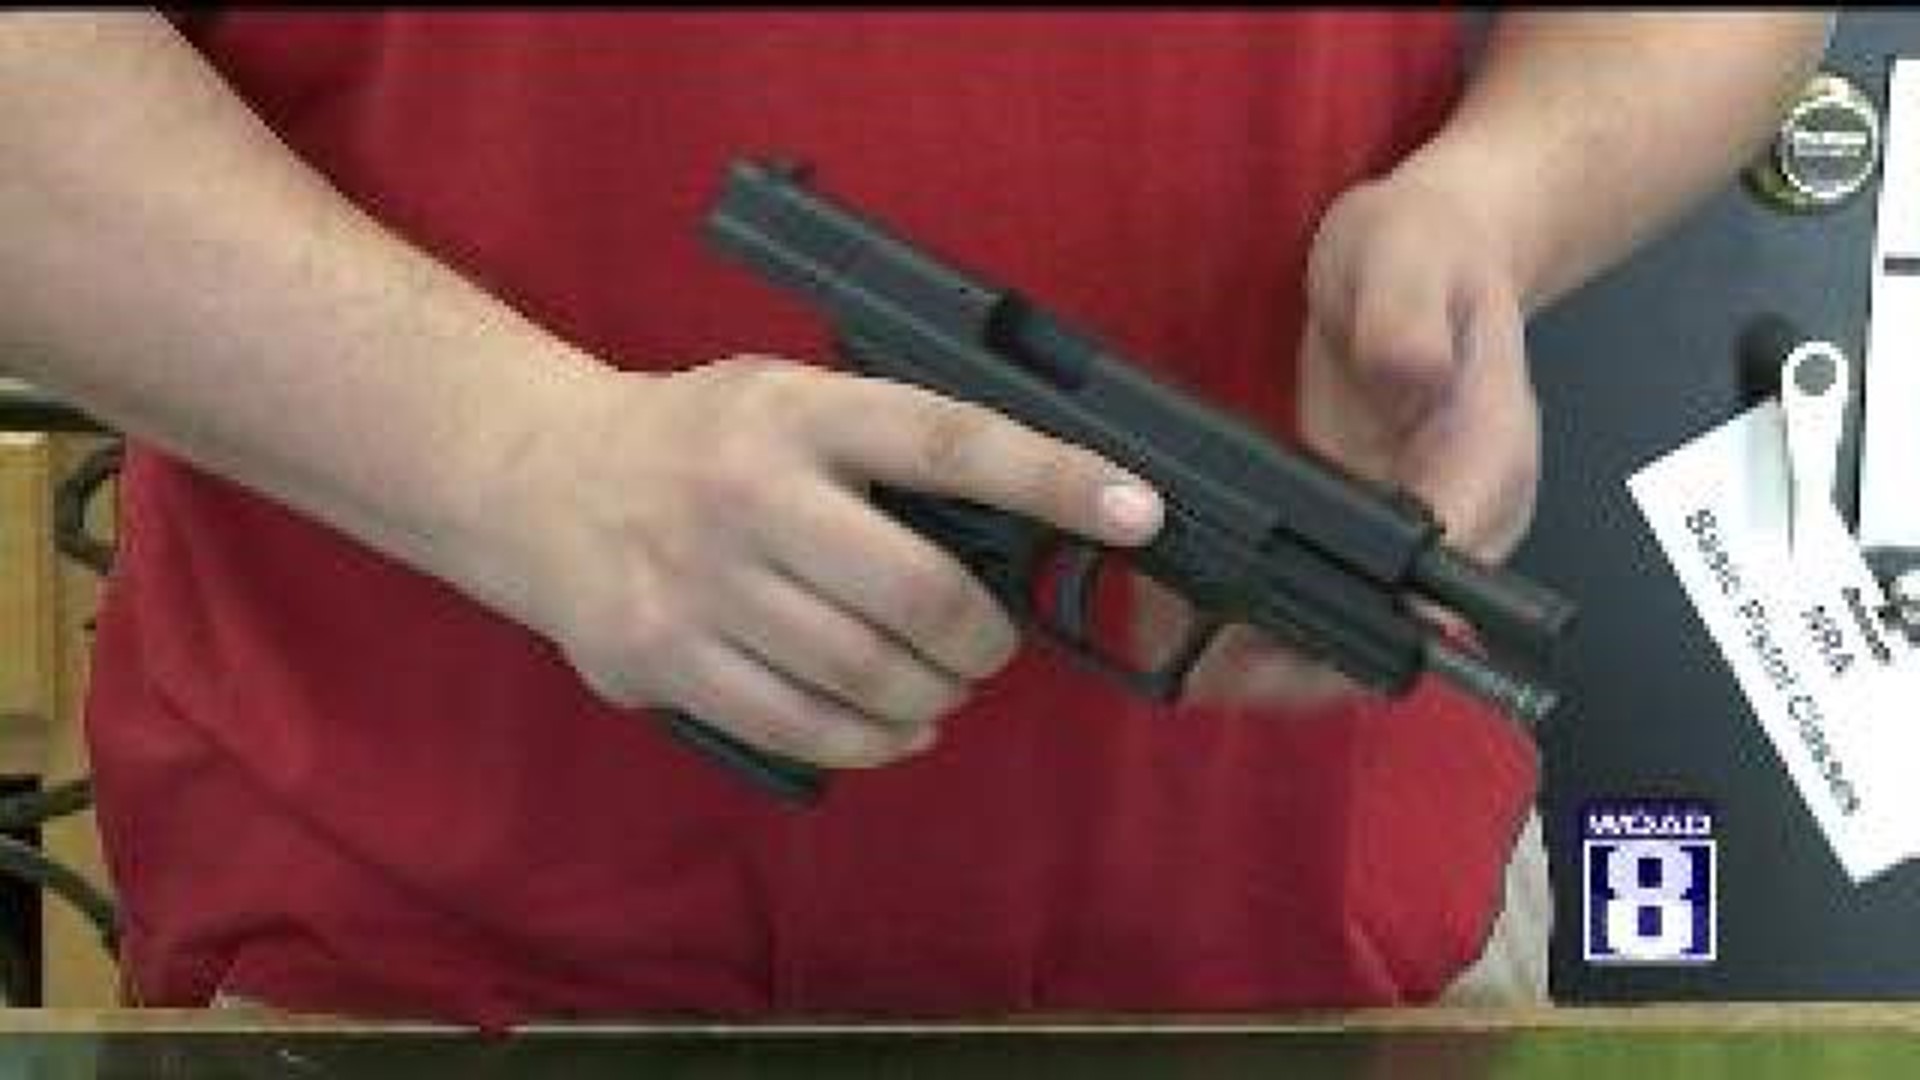 Iowa and Illinois\' Participation in the Gun Control Debate